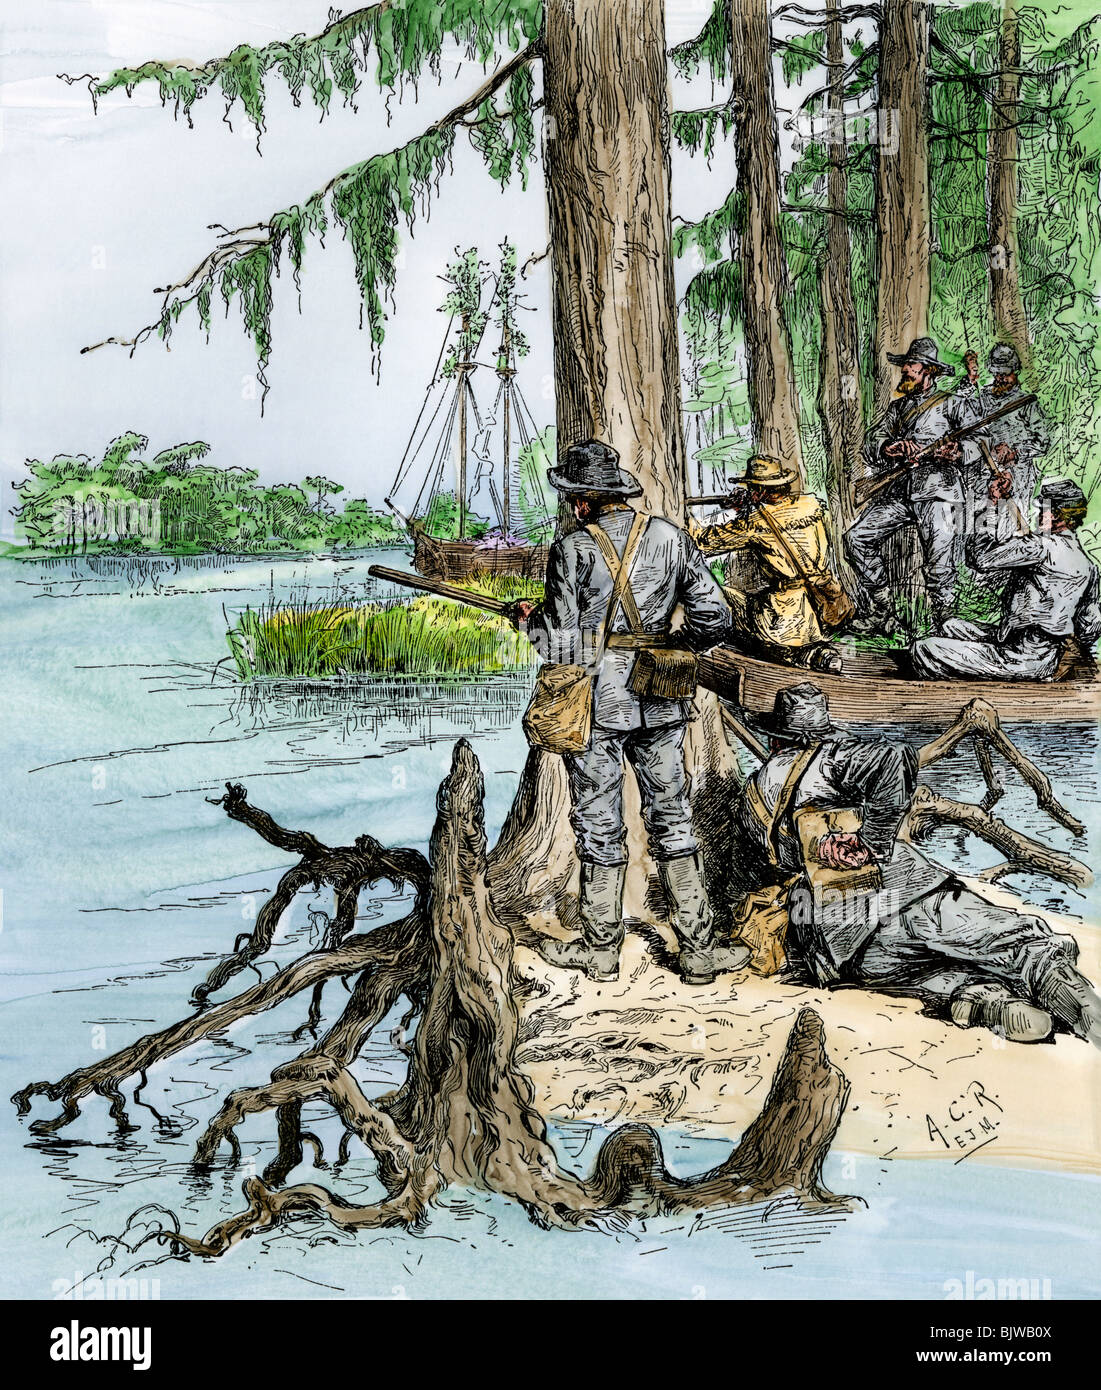 Sumpf - Jäger attackieren Union Mörtel - Boote am Mississippi River, Schlacht von New Orleans, 1862. Hand - farbige Holzschnitt Stockfoto